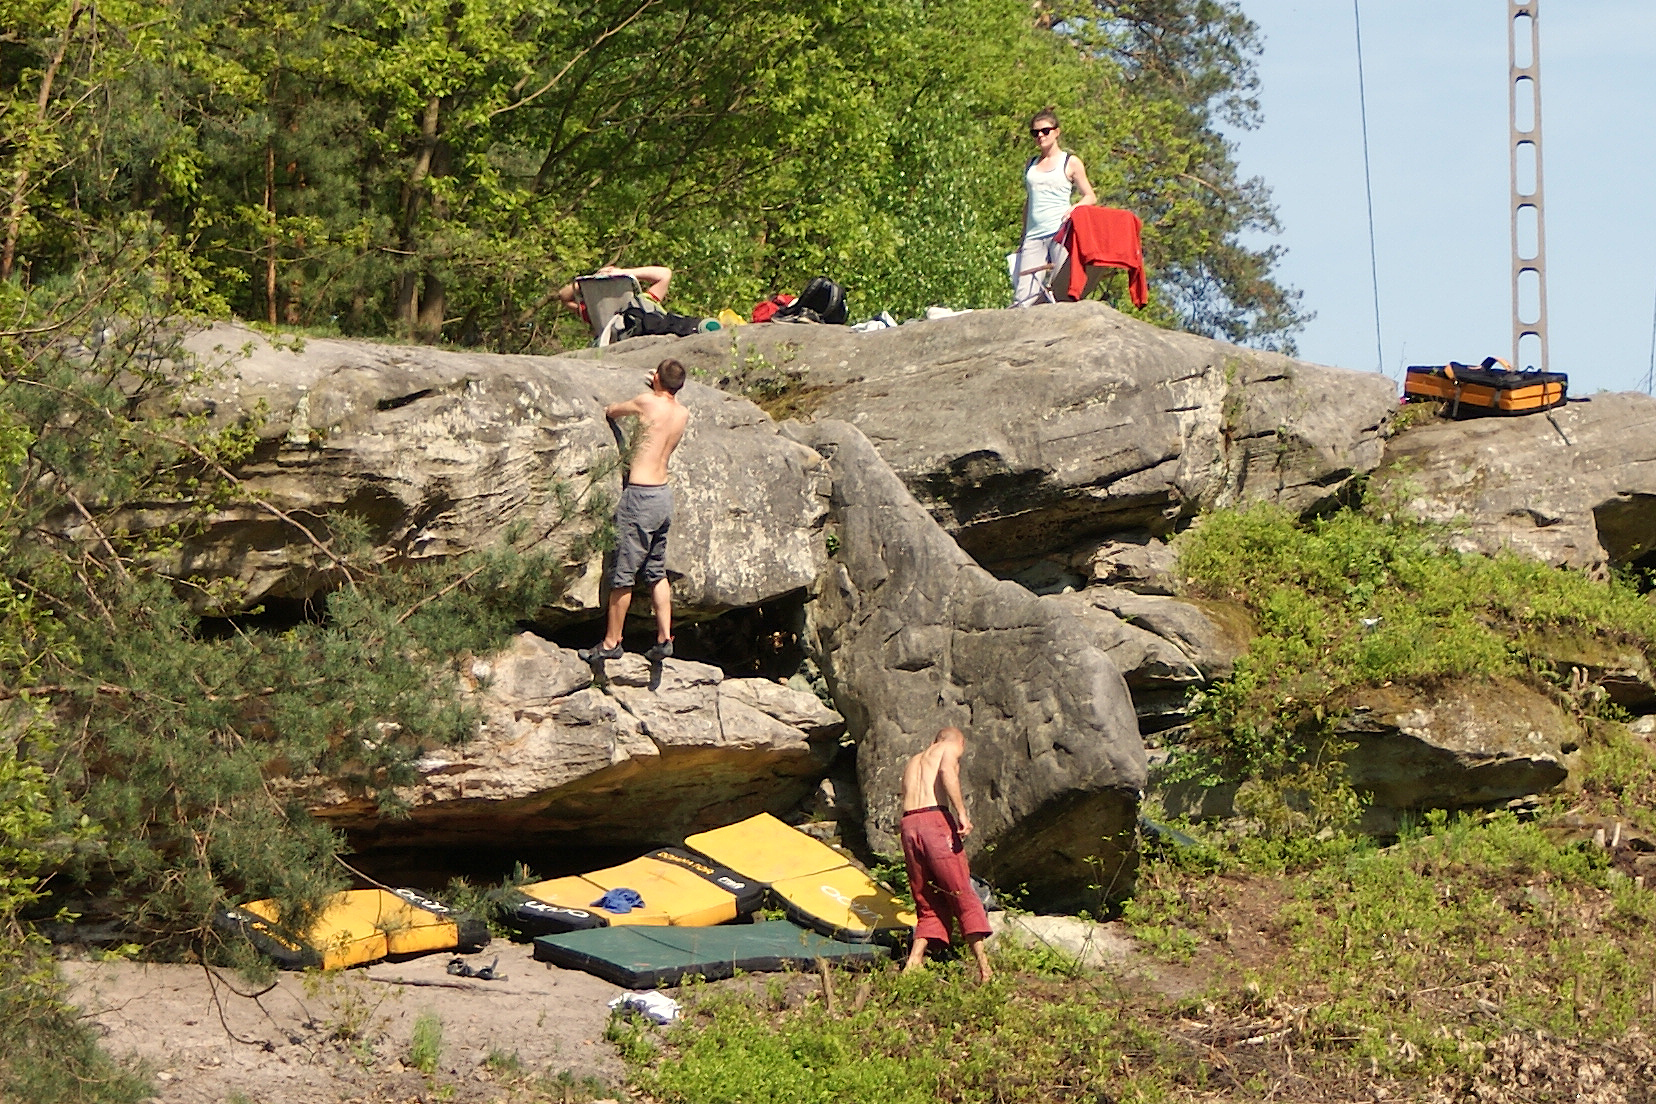 Rezerwat "Skały pod Adamowem" (zdjęcie osób uprawijących wspinaczkę - bouldering)